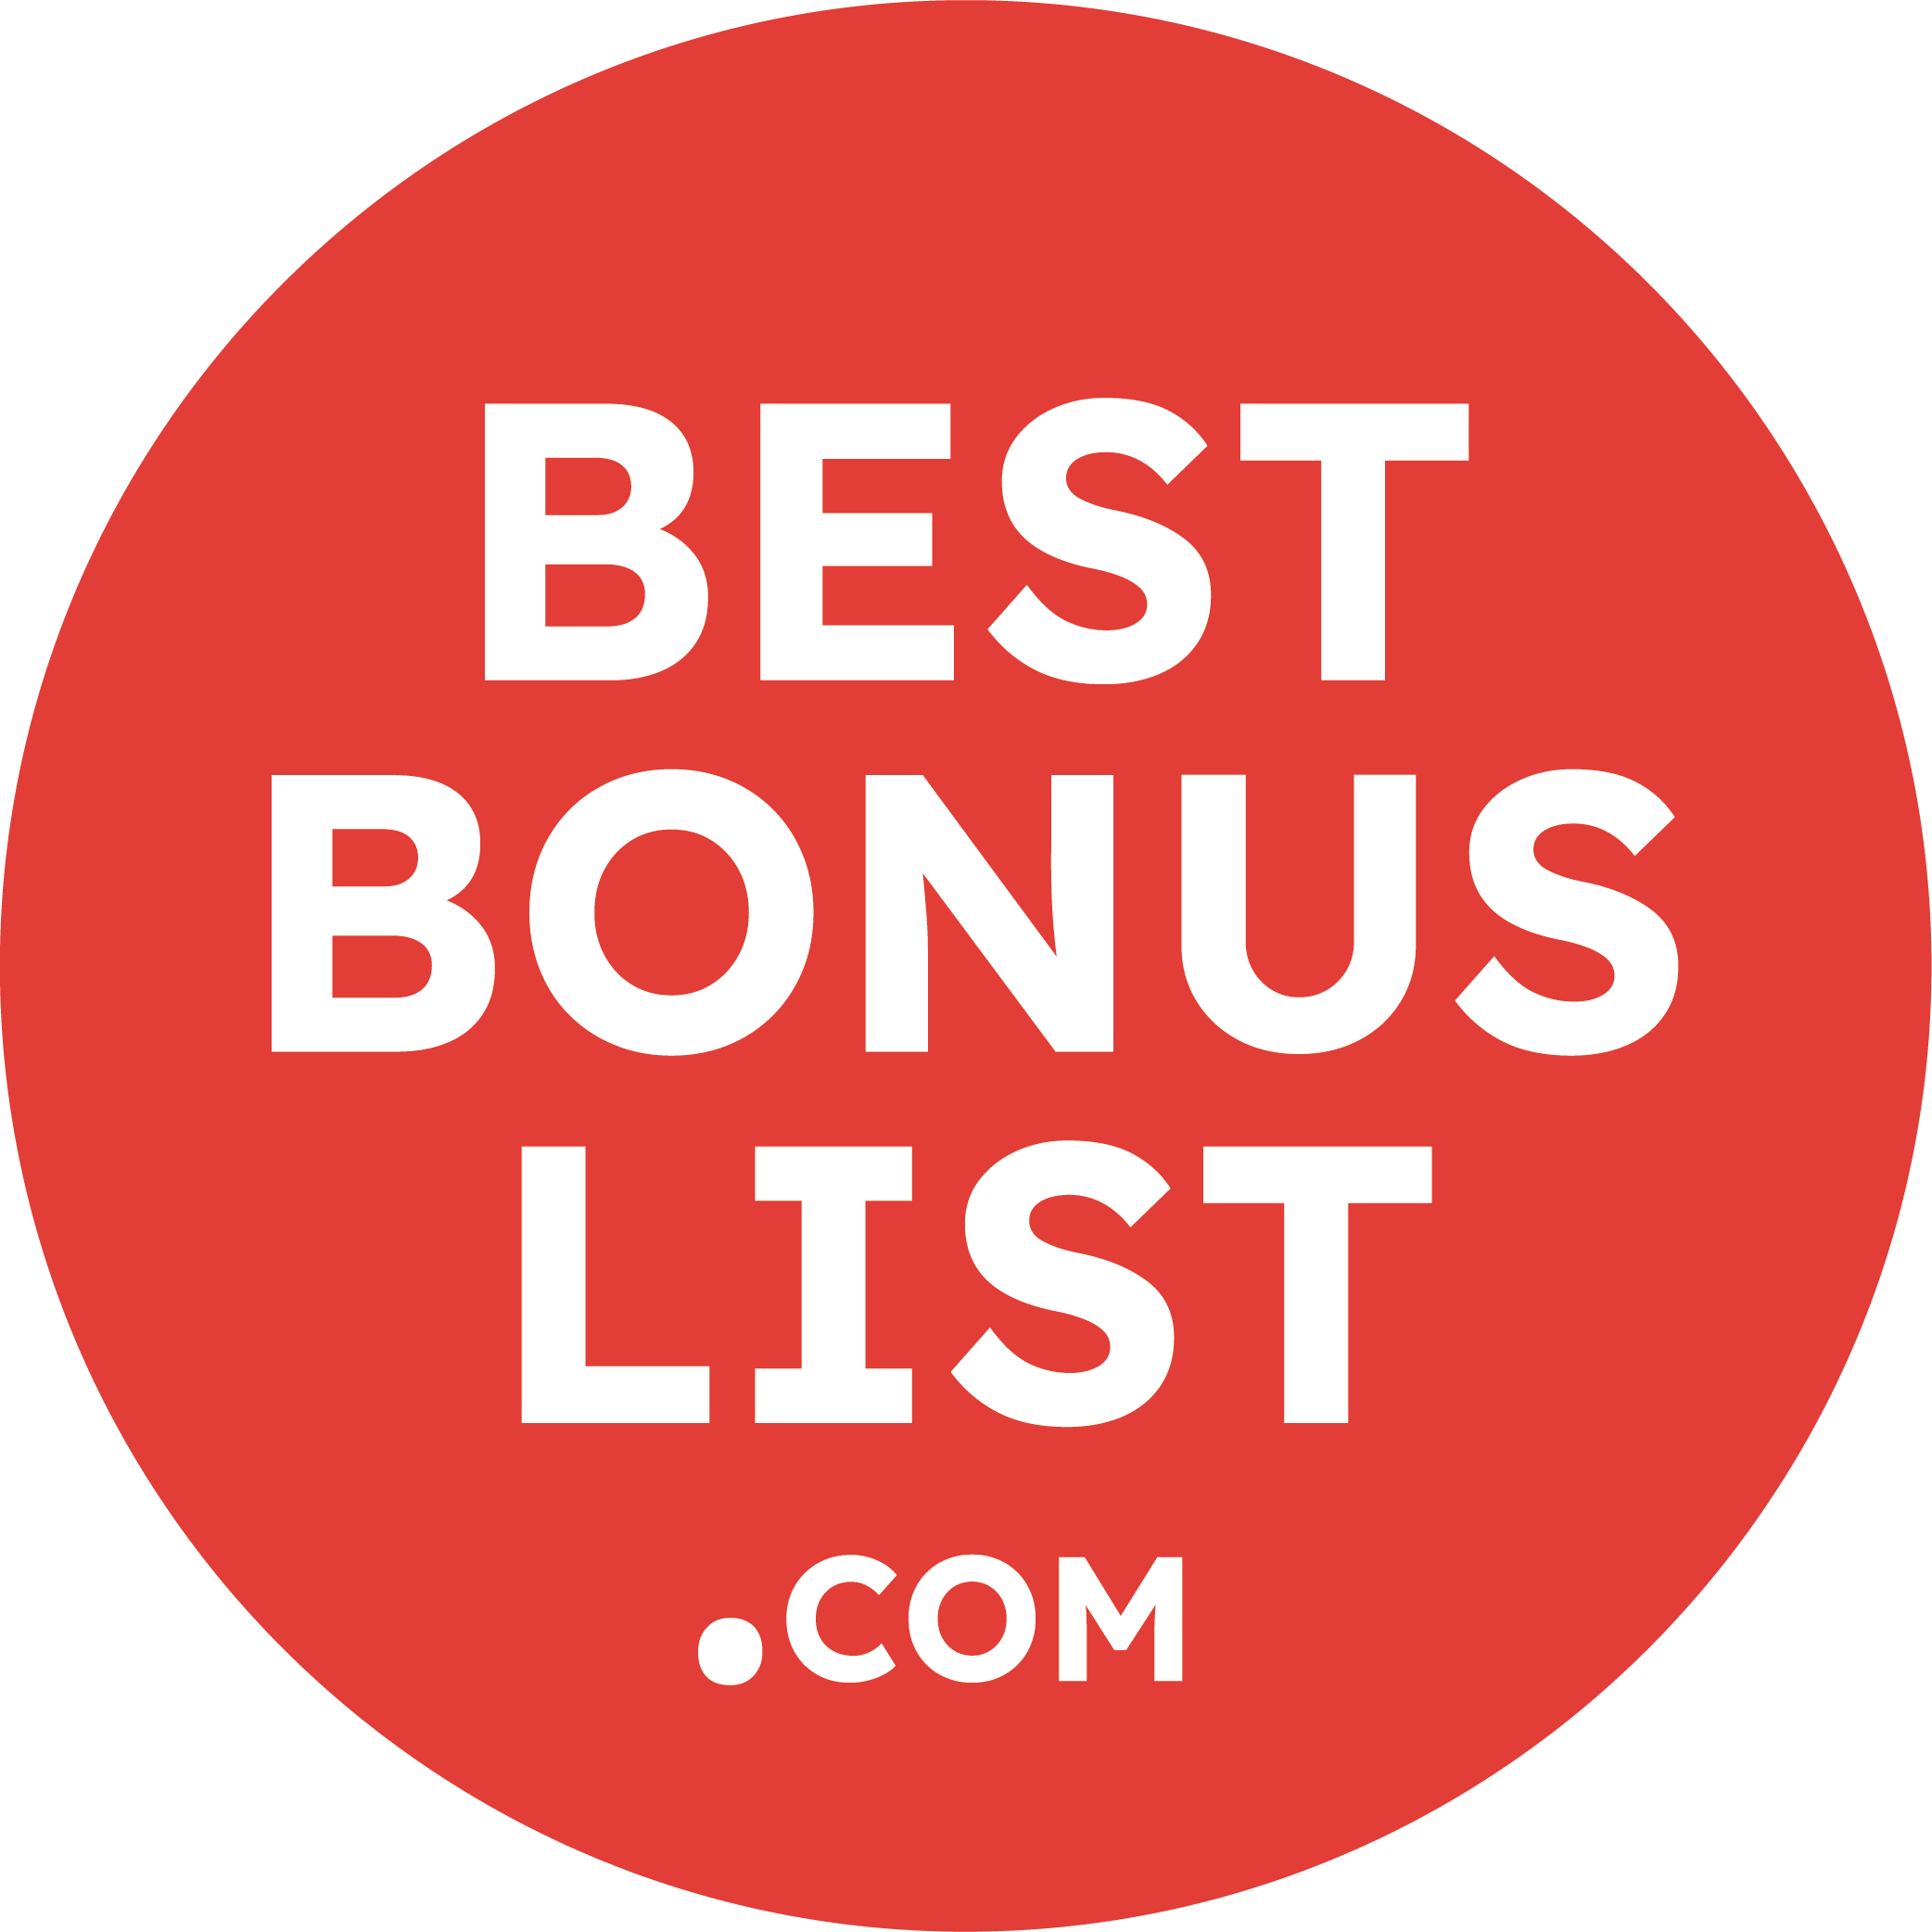 Bestbonuslist.com